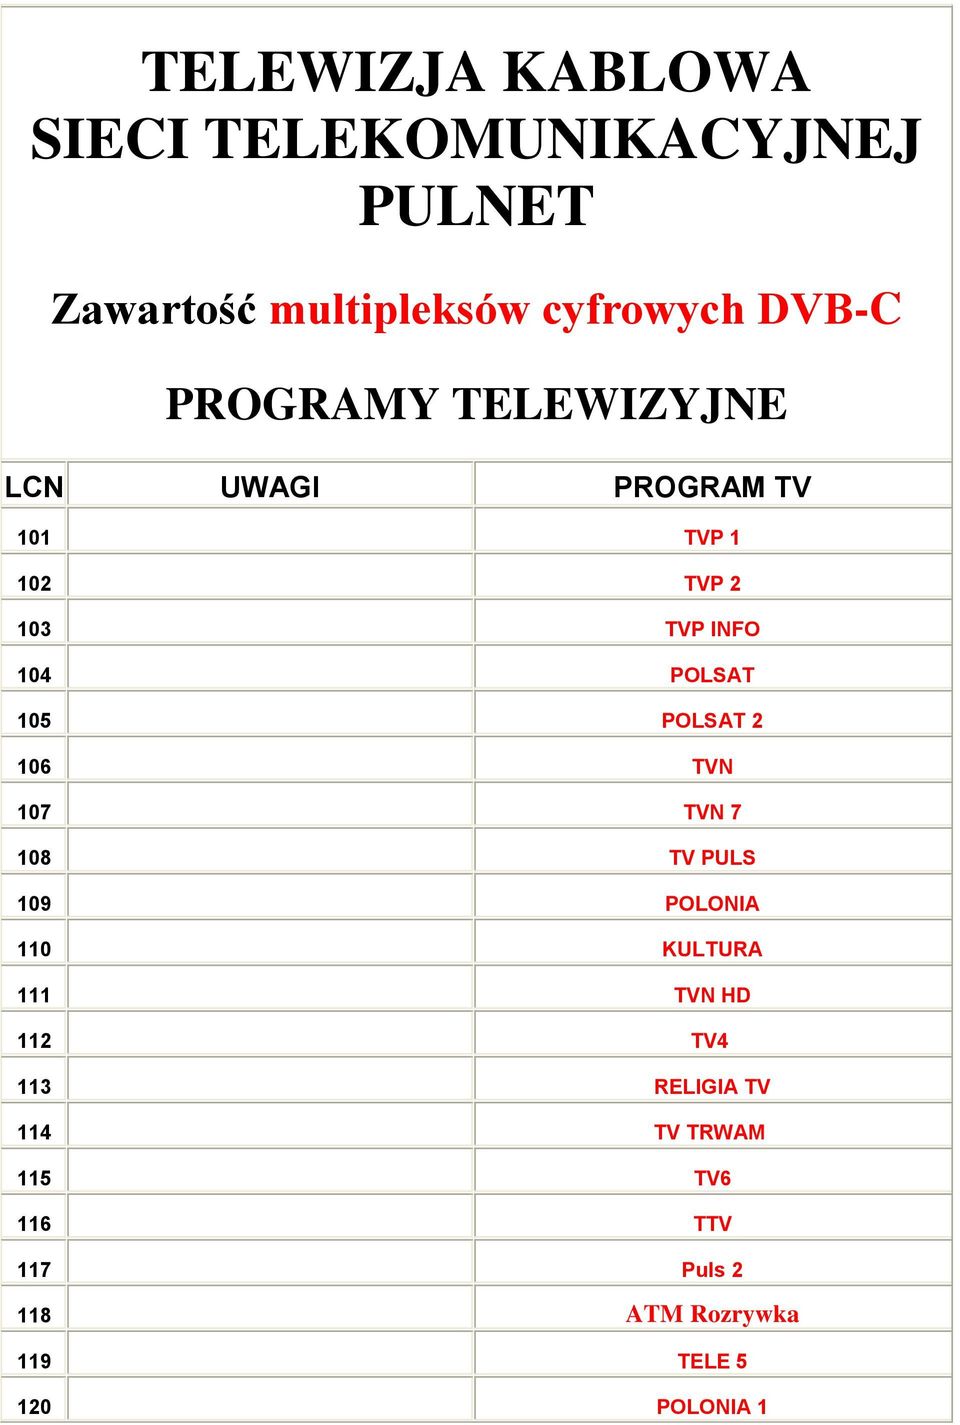 POLSAT 2 106 TVN 107 TVN 7 108 TV PULS 109 POLONIA 110 KULTURA 111 TVN HD 112 TV4 113